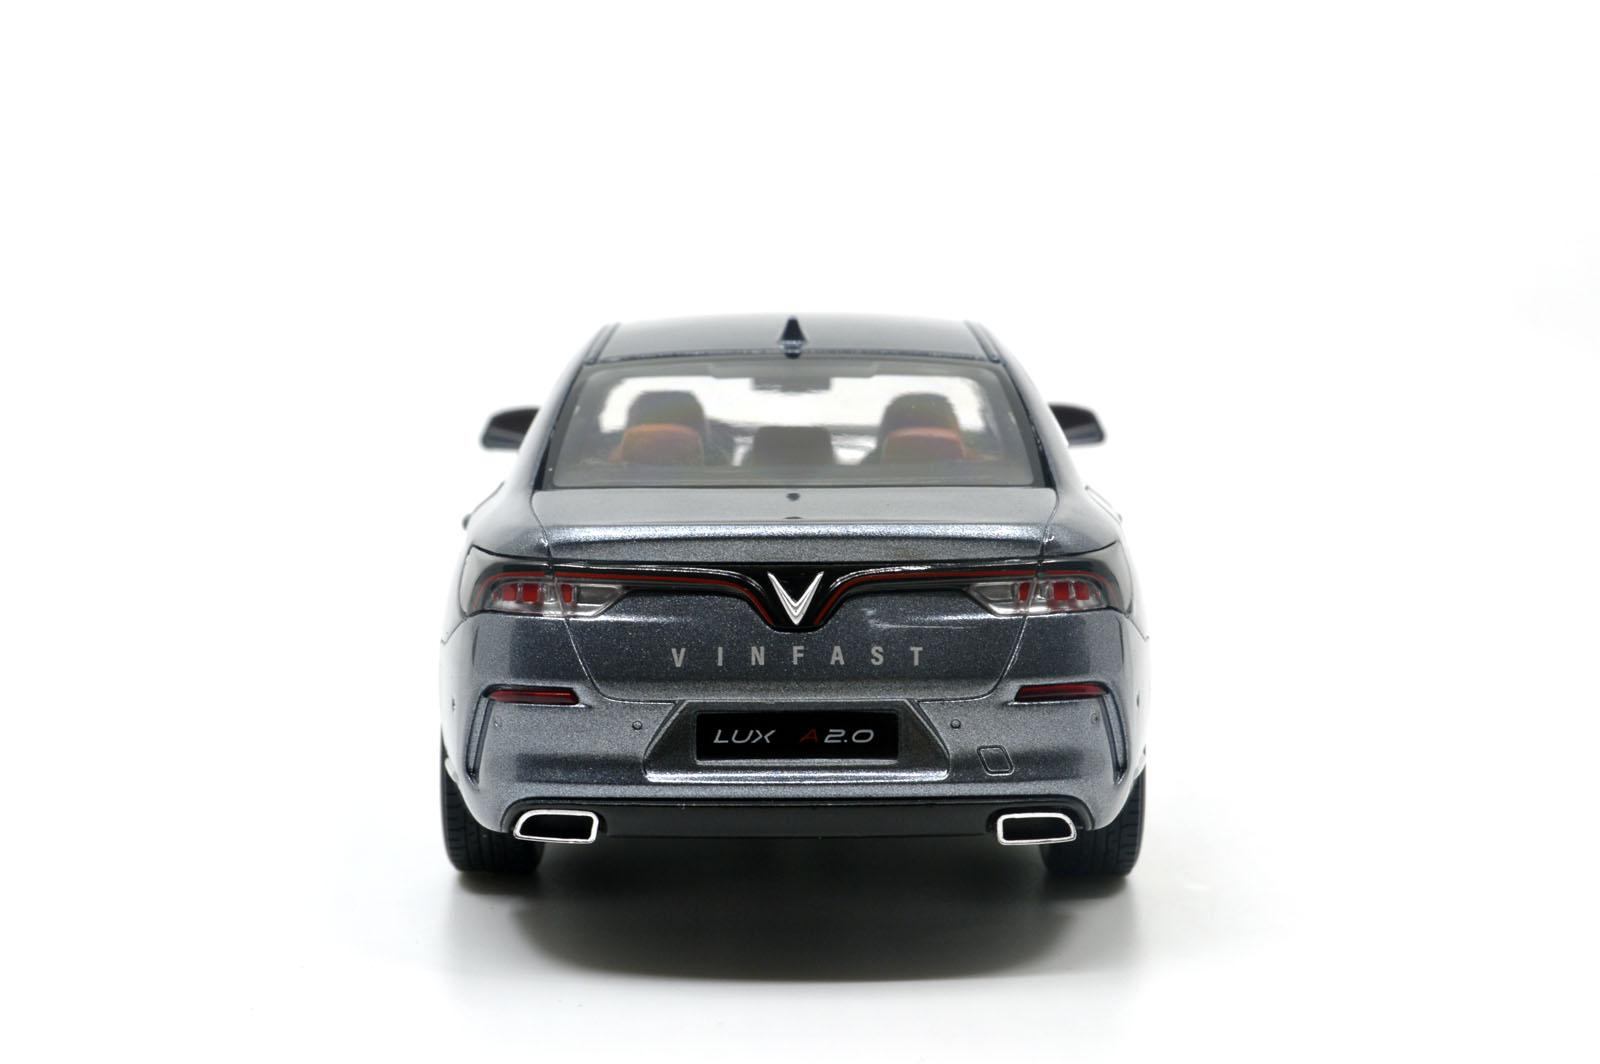 Mô hình xe VinFast Lux chính hãng, giá tốt tại PHỤ KIỆN VINFAST